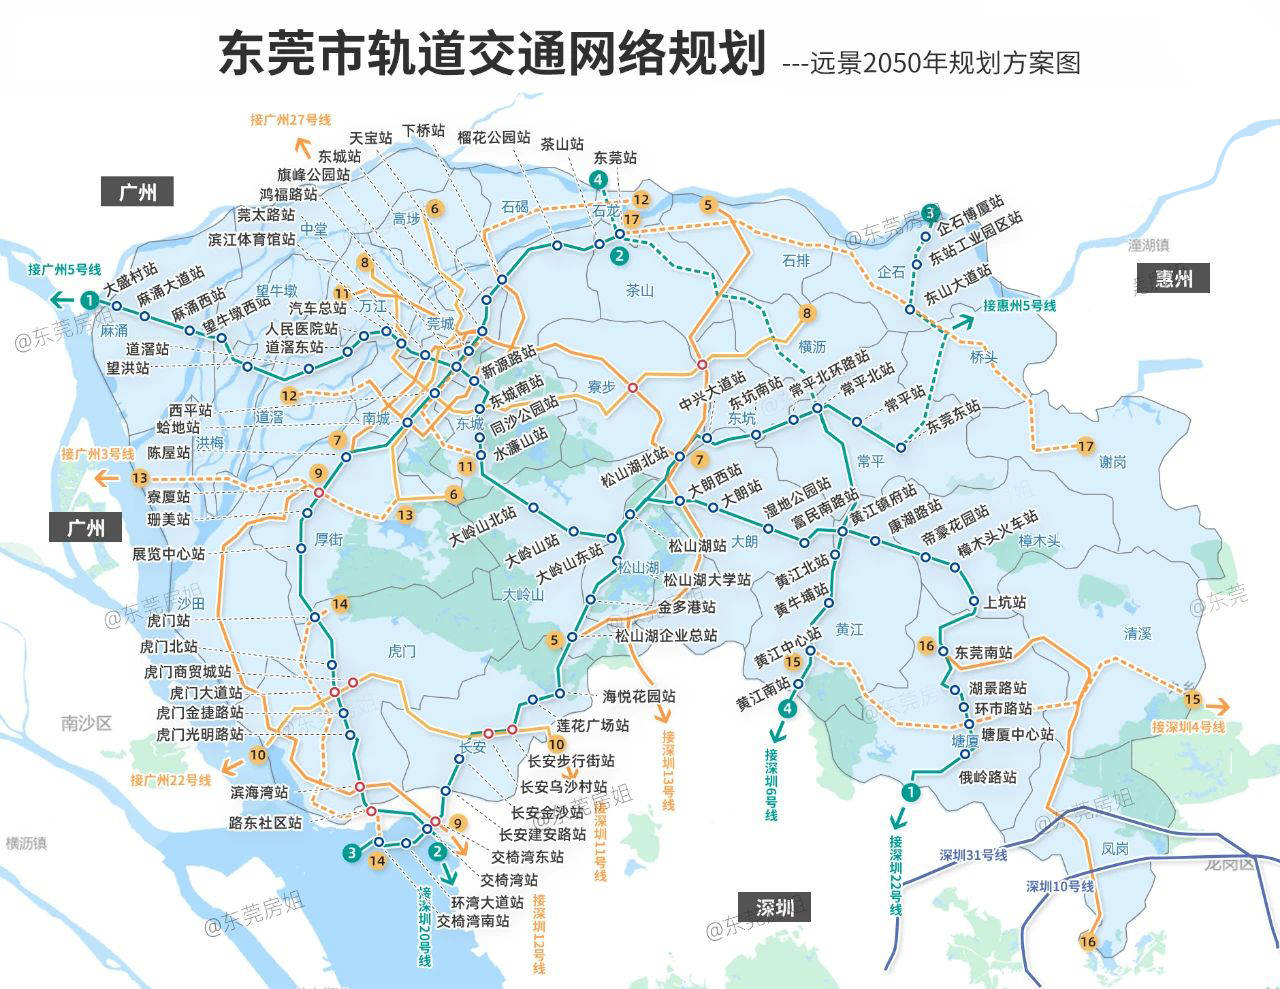 1号线全长69.6km,为东莞规划地铁中最长的一条.